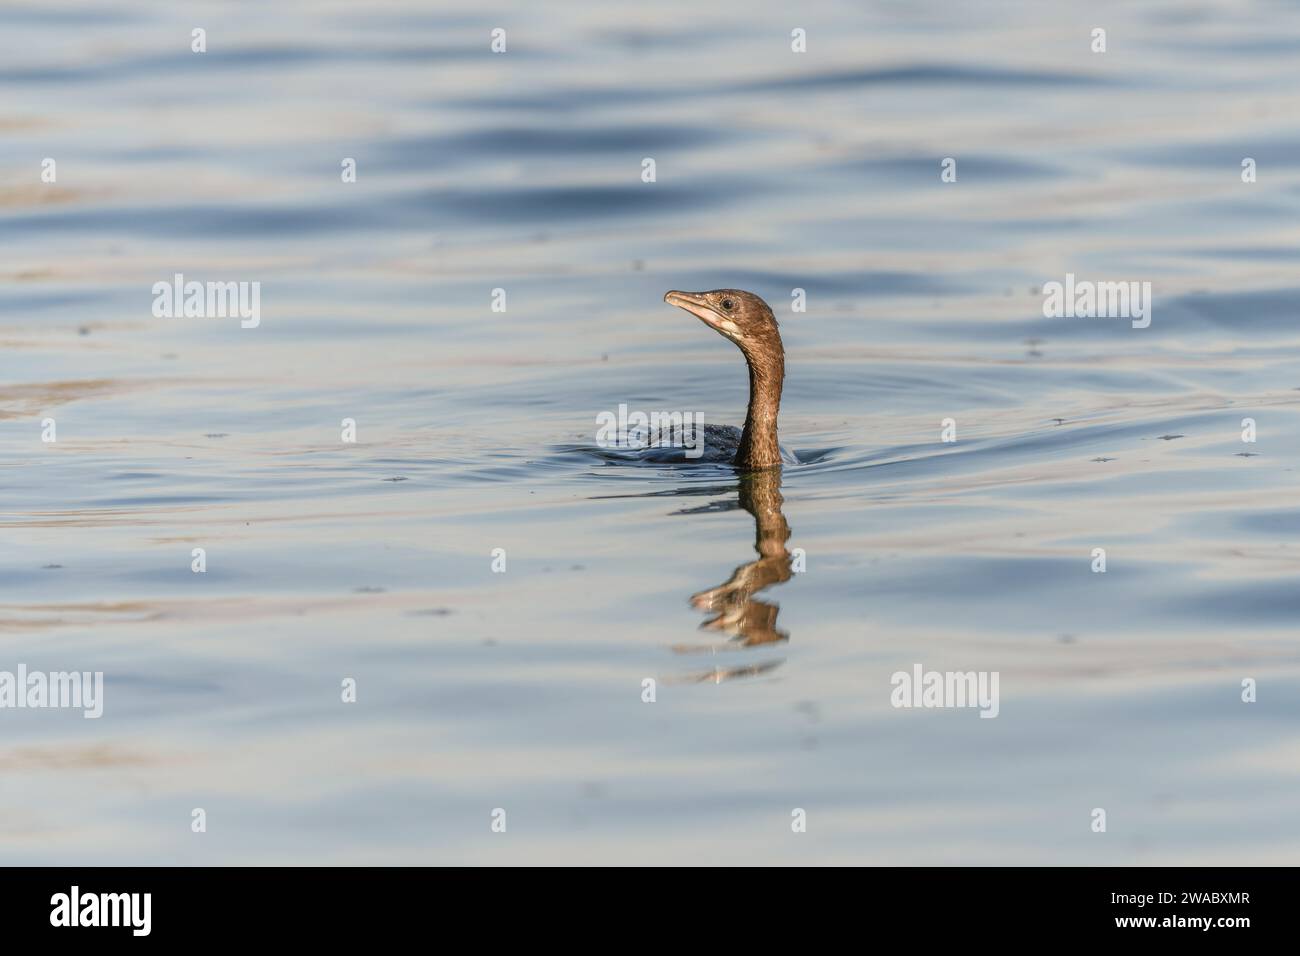 Cormoran pygmée (Microcarbo pygmaeus) nageant dans l'eau à la recherche de nourriture. Bas-Rhin, Alsace, Grand est, France, Europe. Banque D'Images